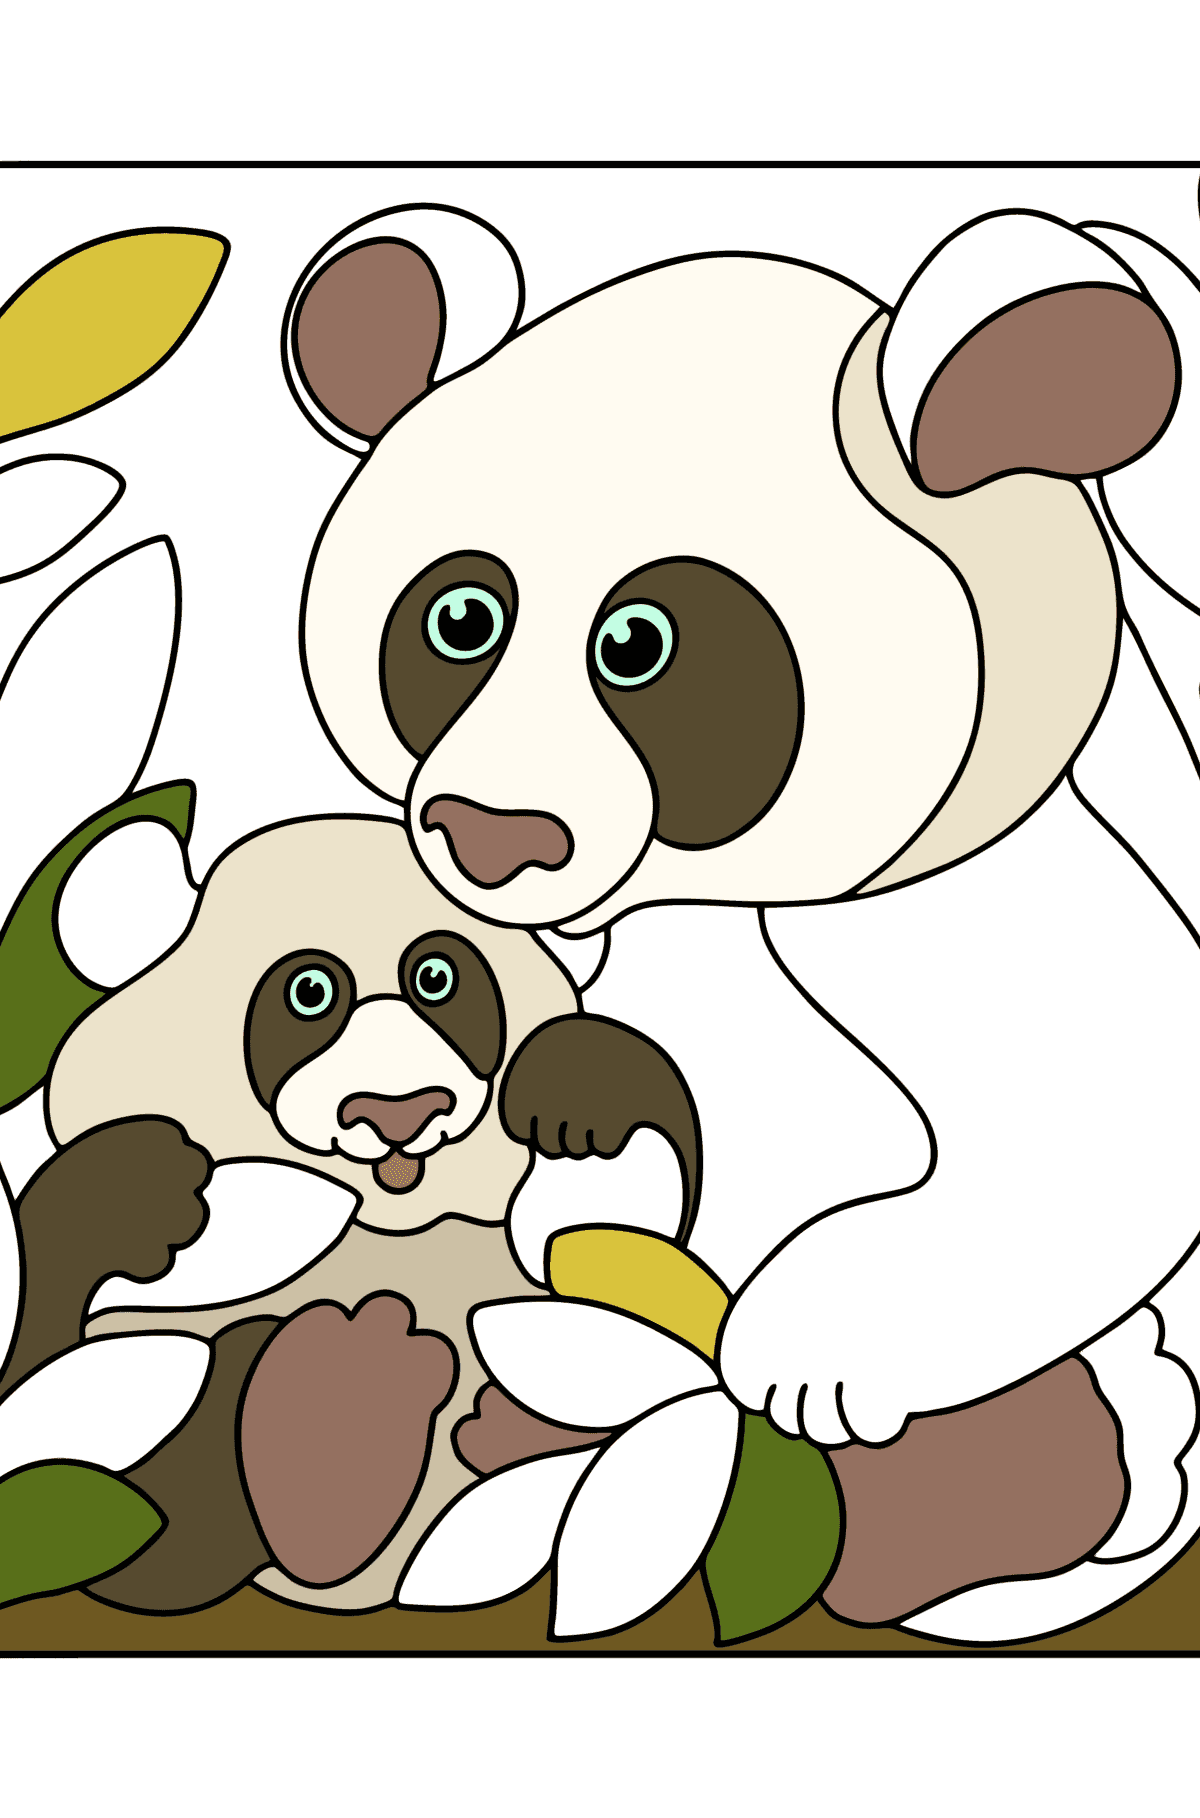 Kolorowanka Panda wielka z młodym - Kolorowanki dla dzieci